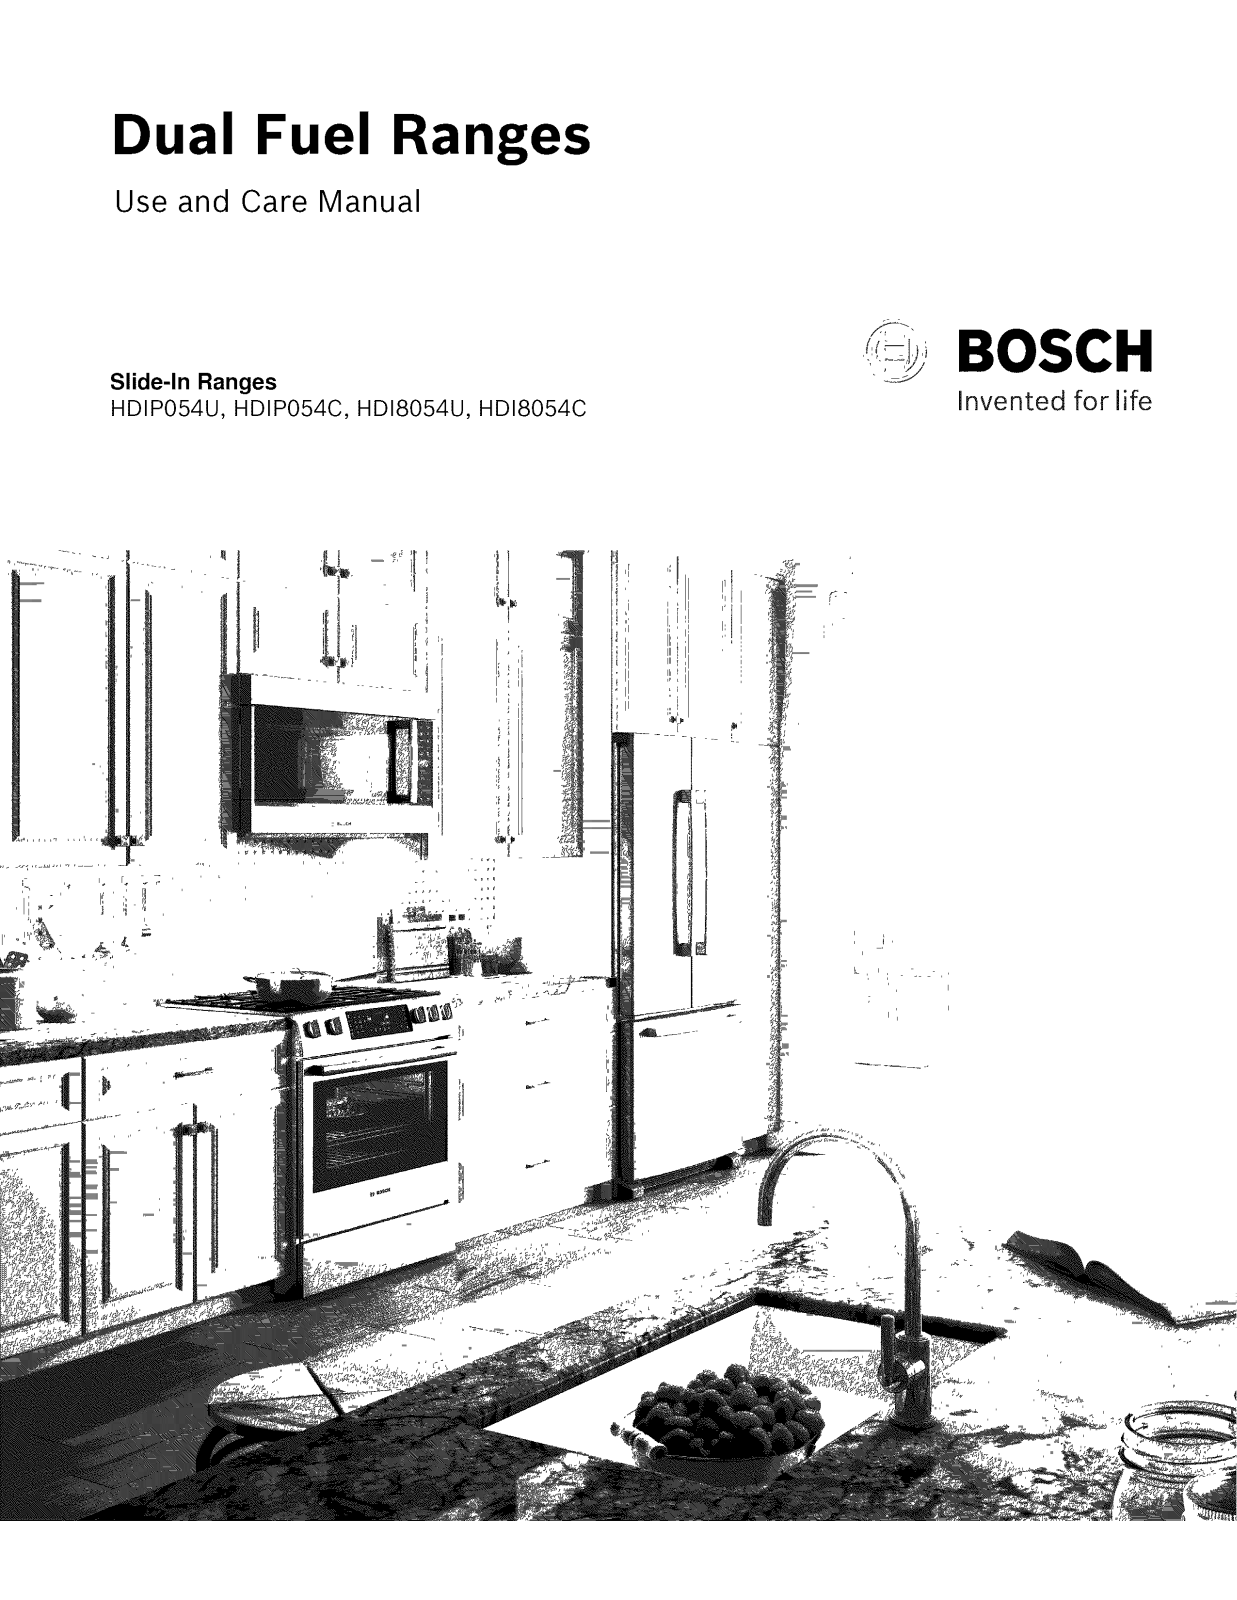 Bosch HDI8054U/03, HDI8054U/06, HDI8054U/05, HDI8054U/04, HDI8054U/02 Owner’s Manual